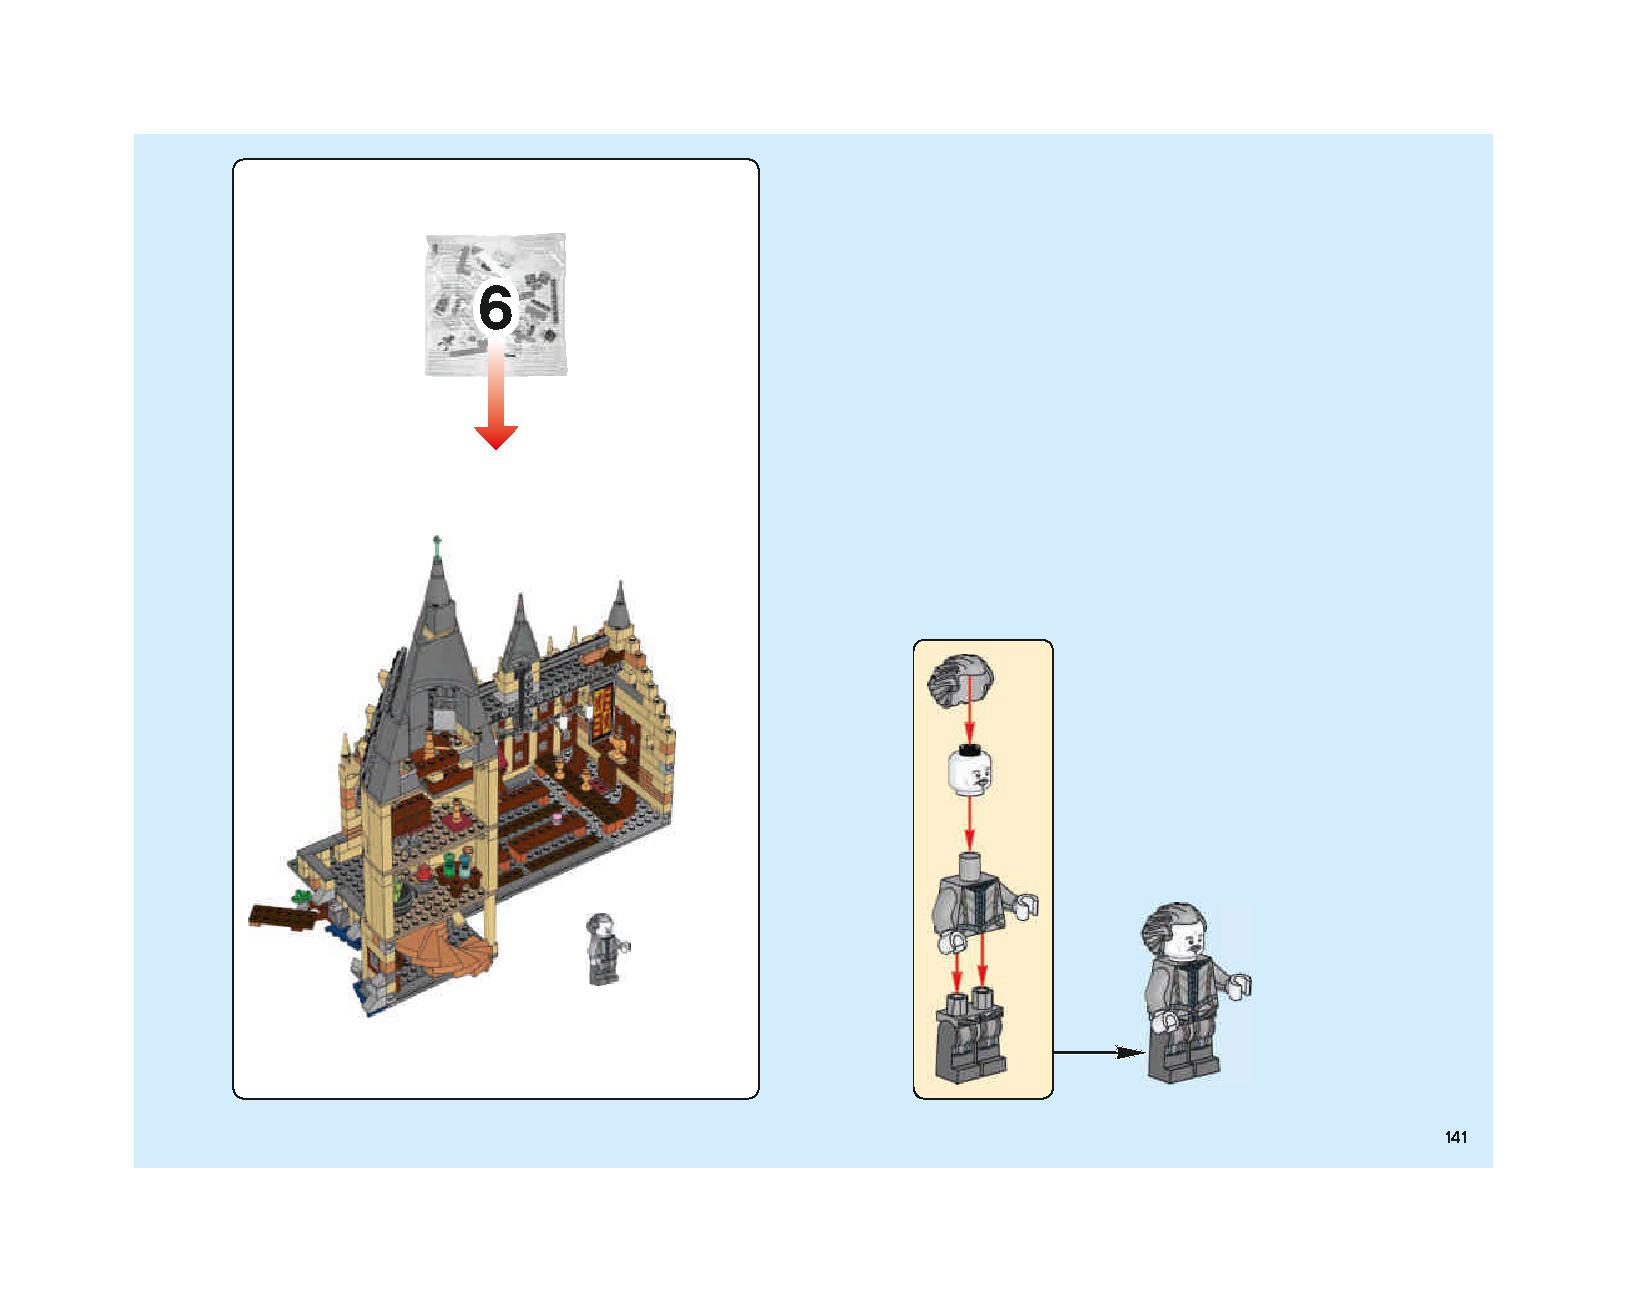 ホグワーツの大広間 75954 レゴの商品情報 レゴの説明書・組立方法 141 page